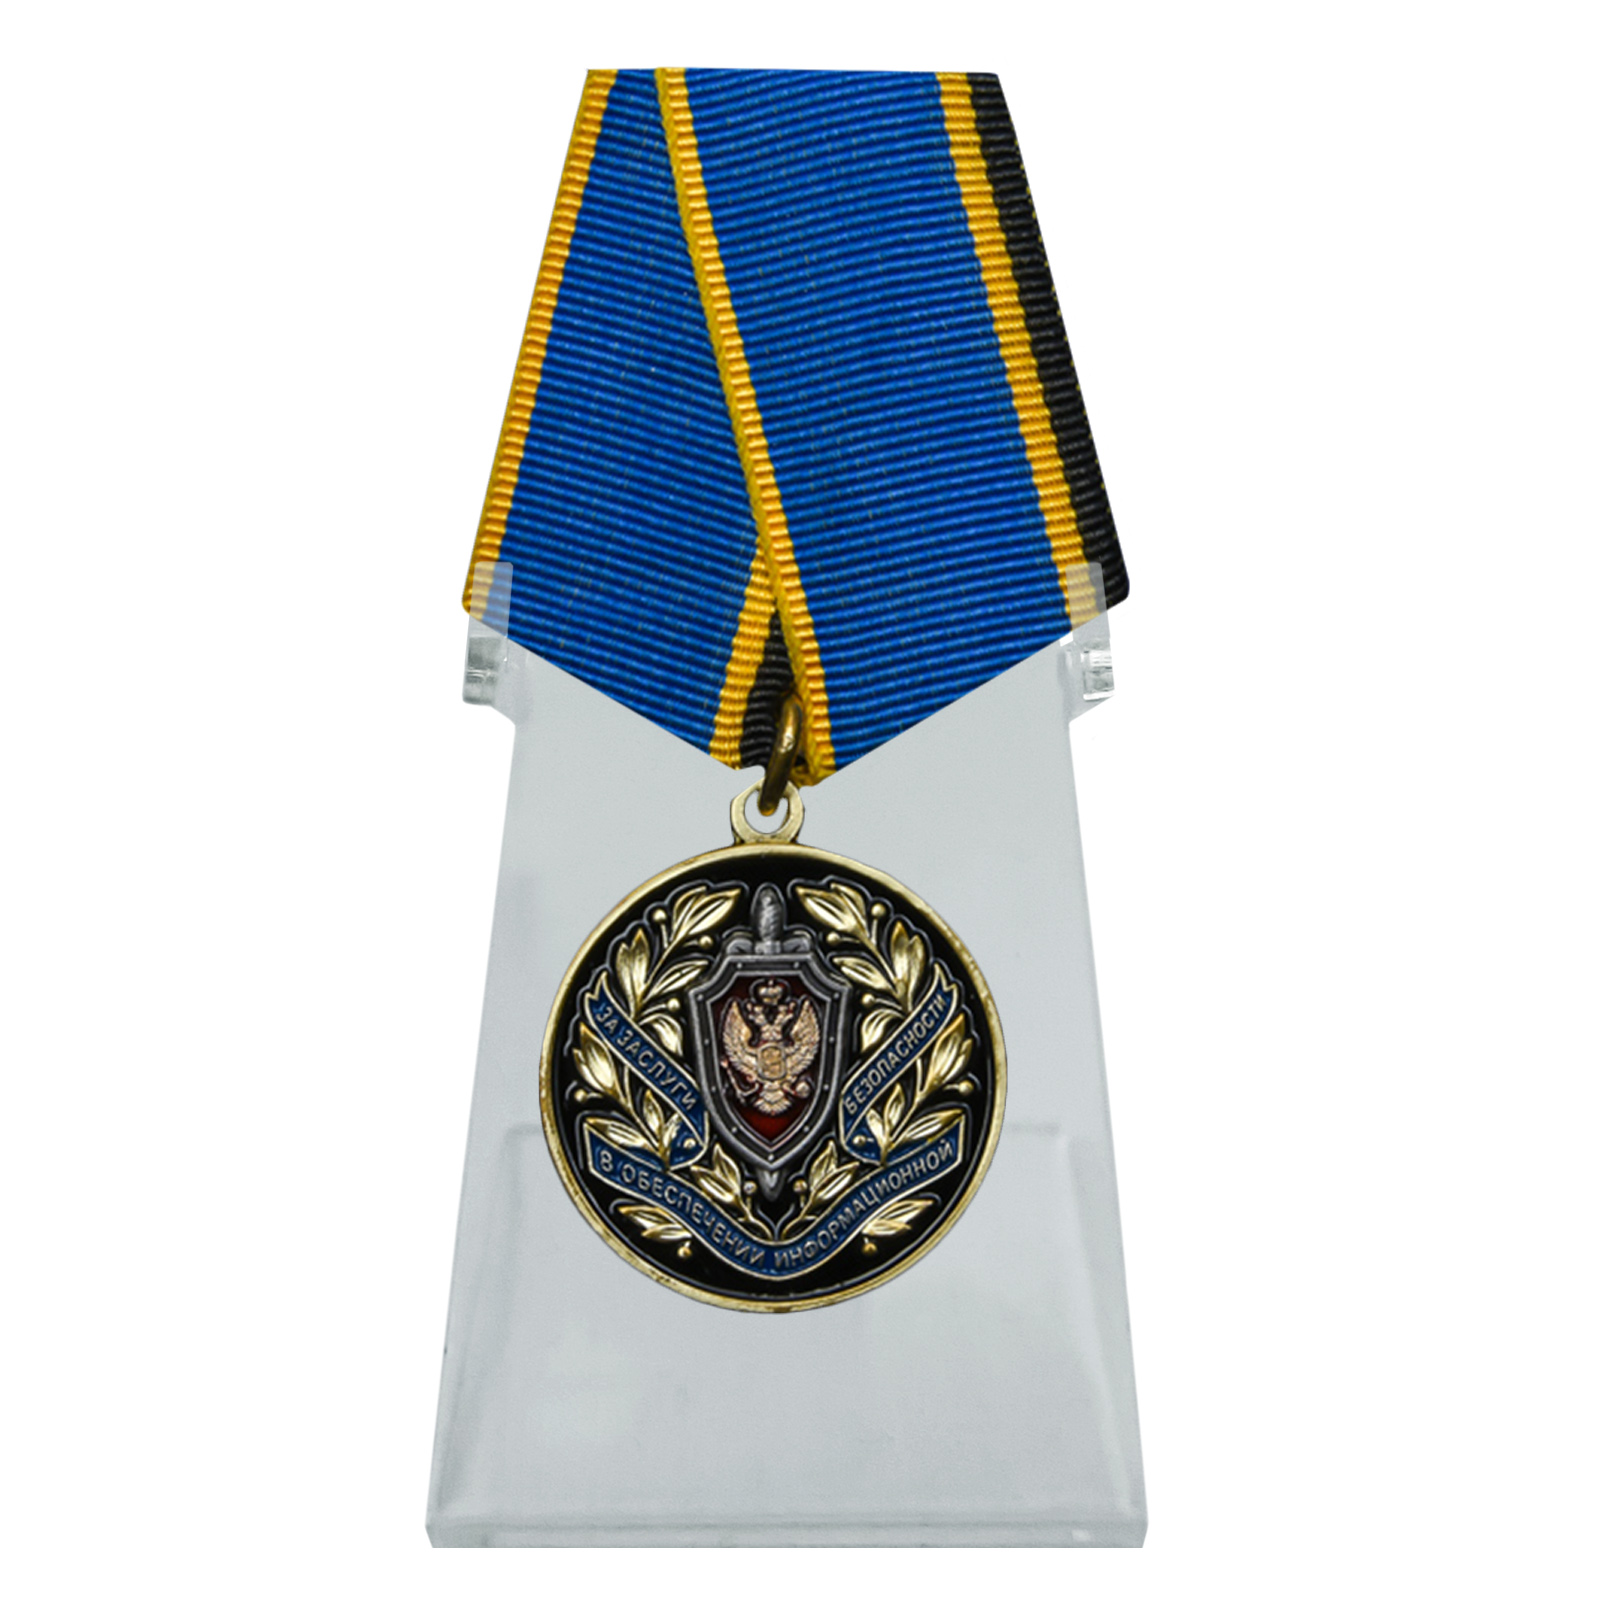 Купить медаль За заслуги в обеспечении информационной безопасности ФСБ РФ на подставке выгодно